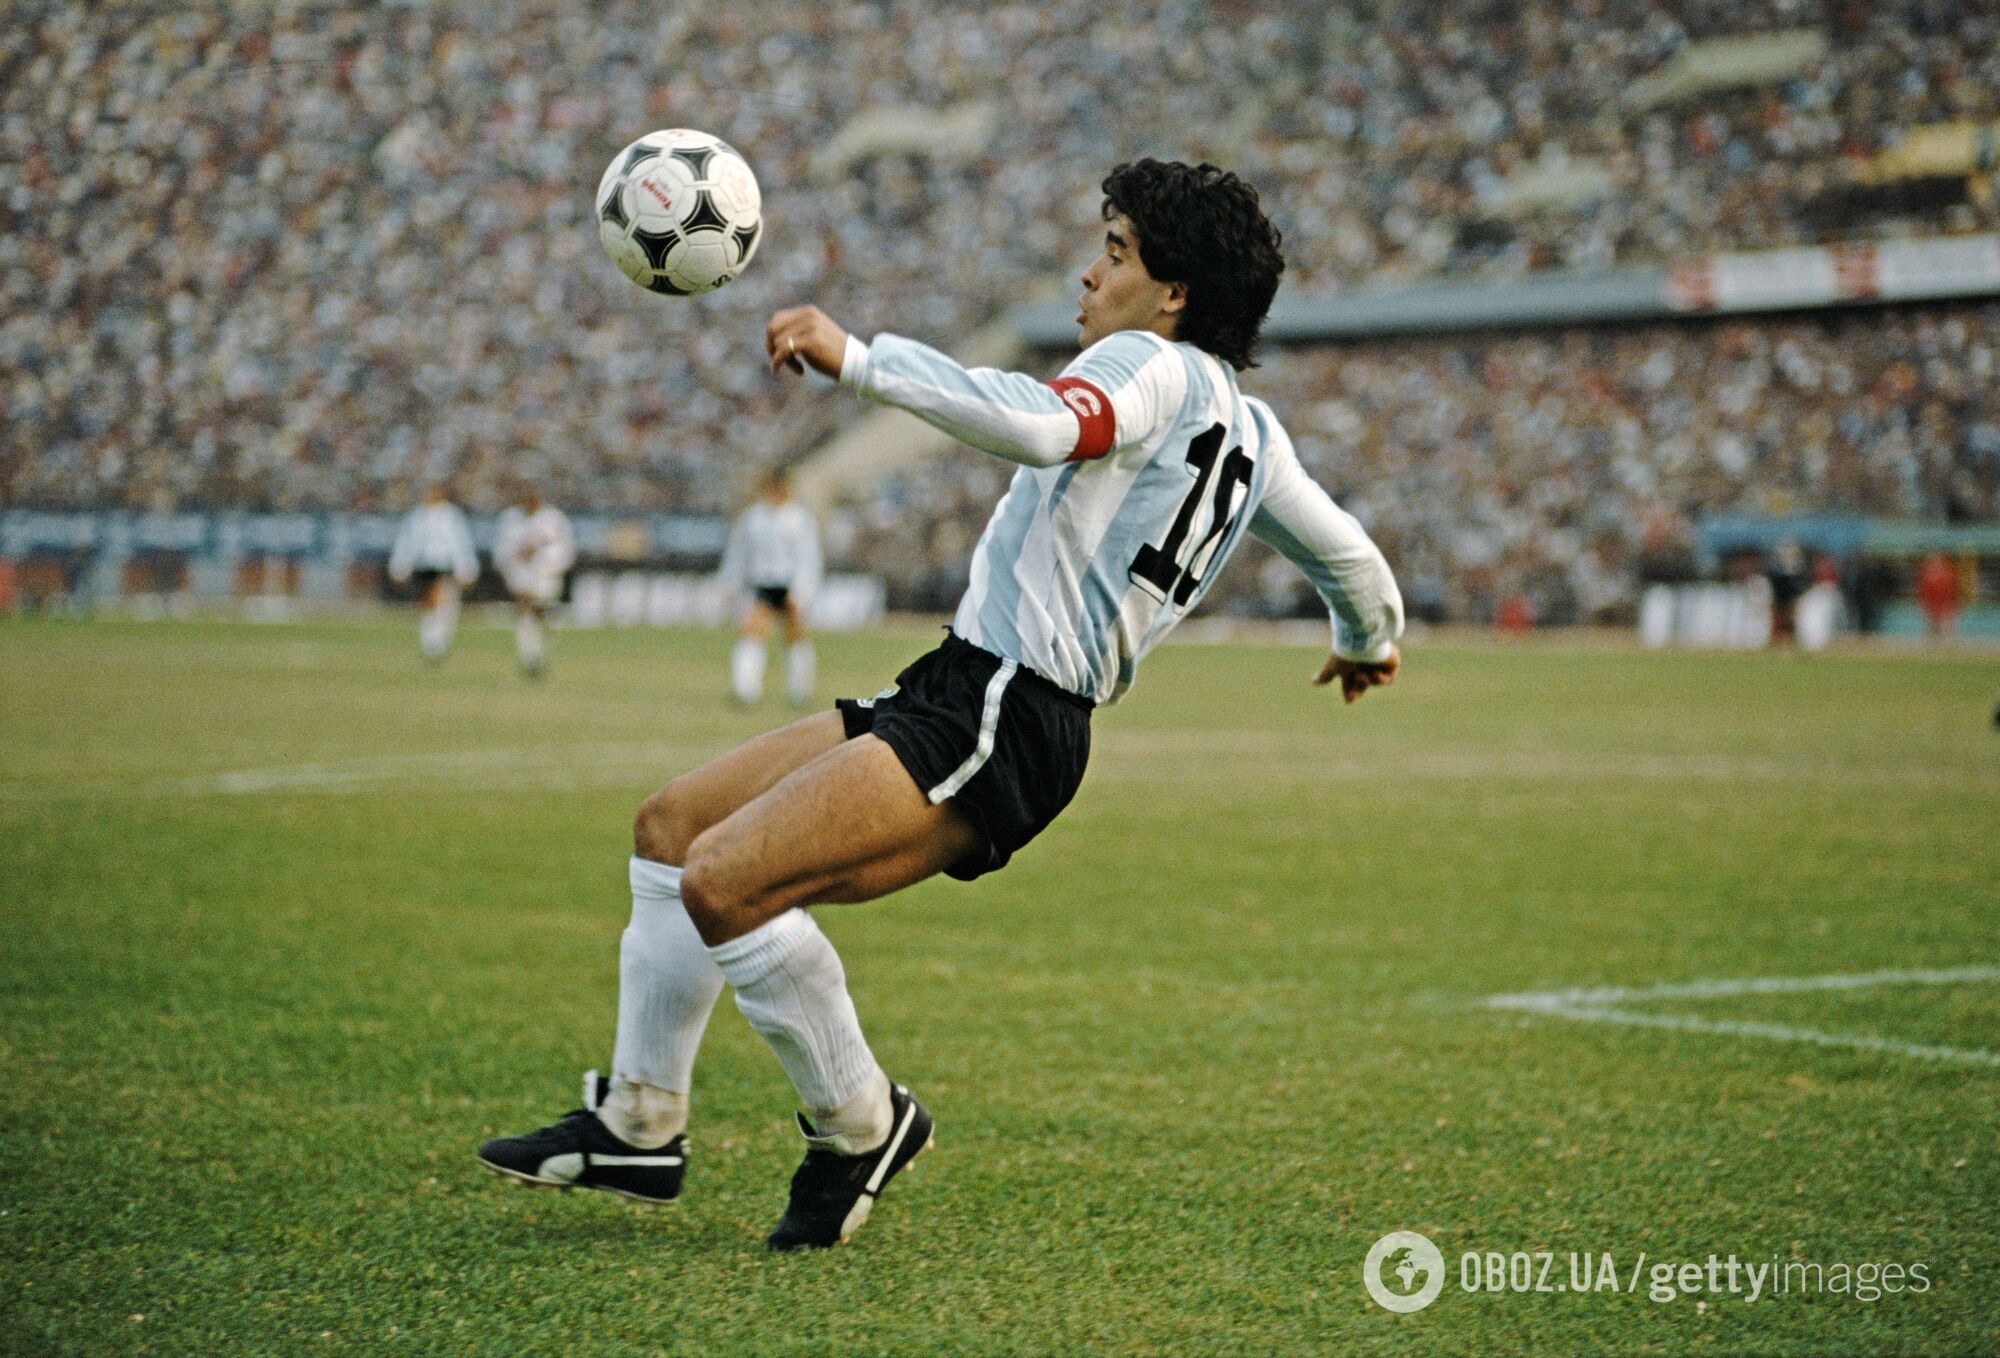 Диего Марадона, матч чемпионата мира по футболу, 1986 год